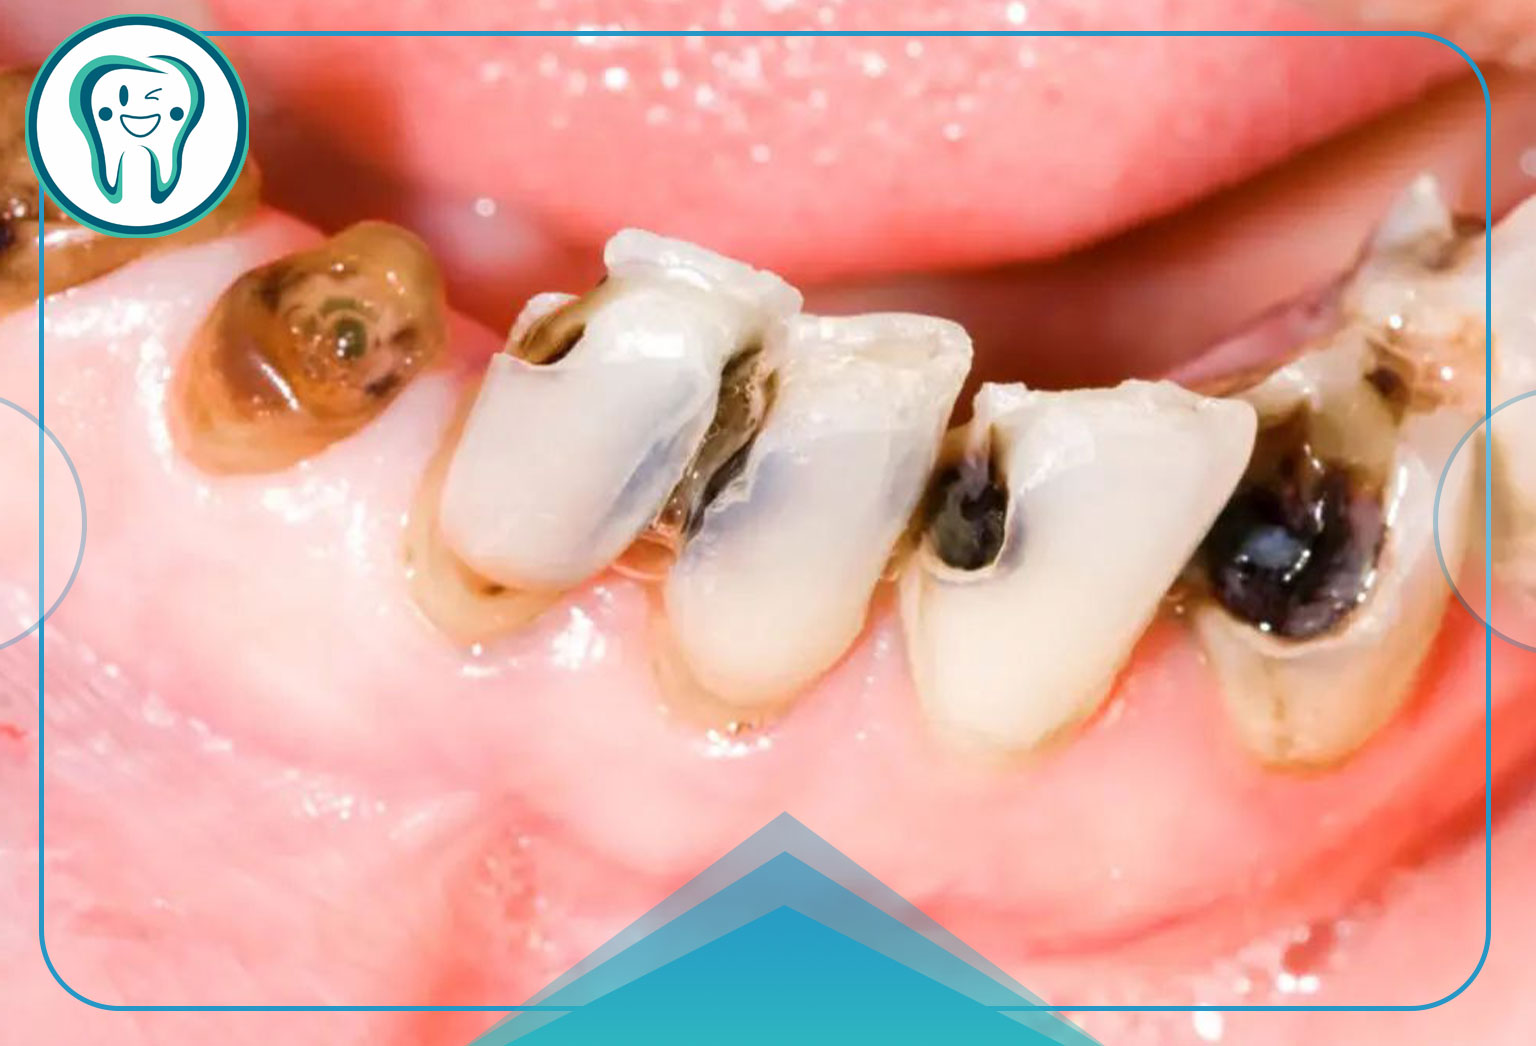 عواملی که احتمال پوسیدگی دندان را افزایش می دهد؟